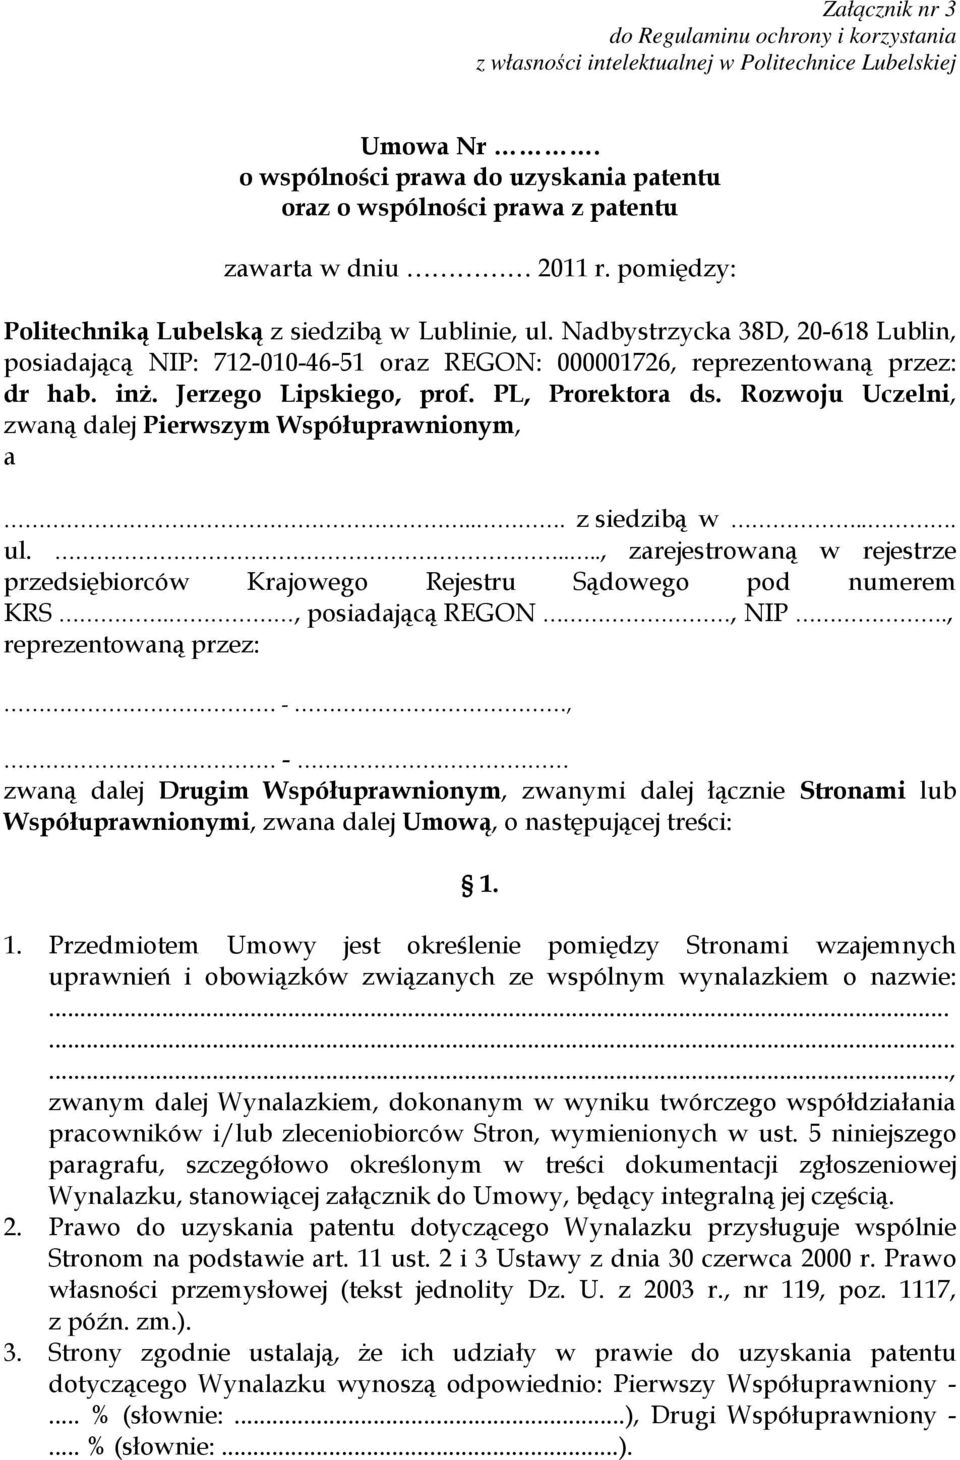 Nadbystrzycka 38D, 20-618 Lublin, posiadającą NIP: 712-010-46-51 oraz REGON: 000001726, reprezentowaną przez: dr hab. inż. Jerzego Lipskiego, prof. PL, Prorektora ds.